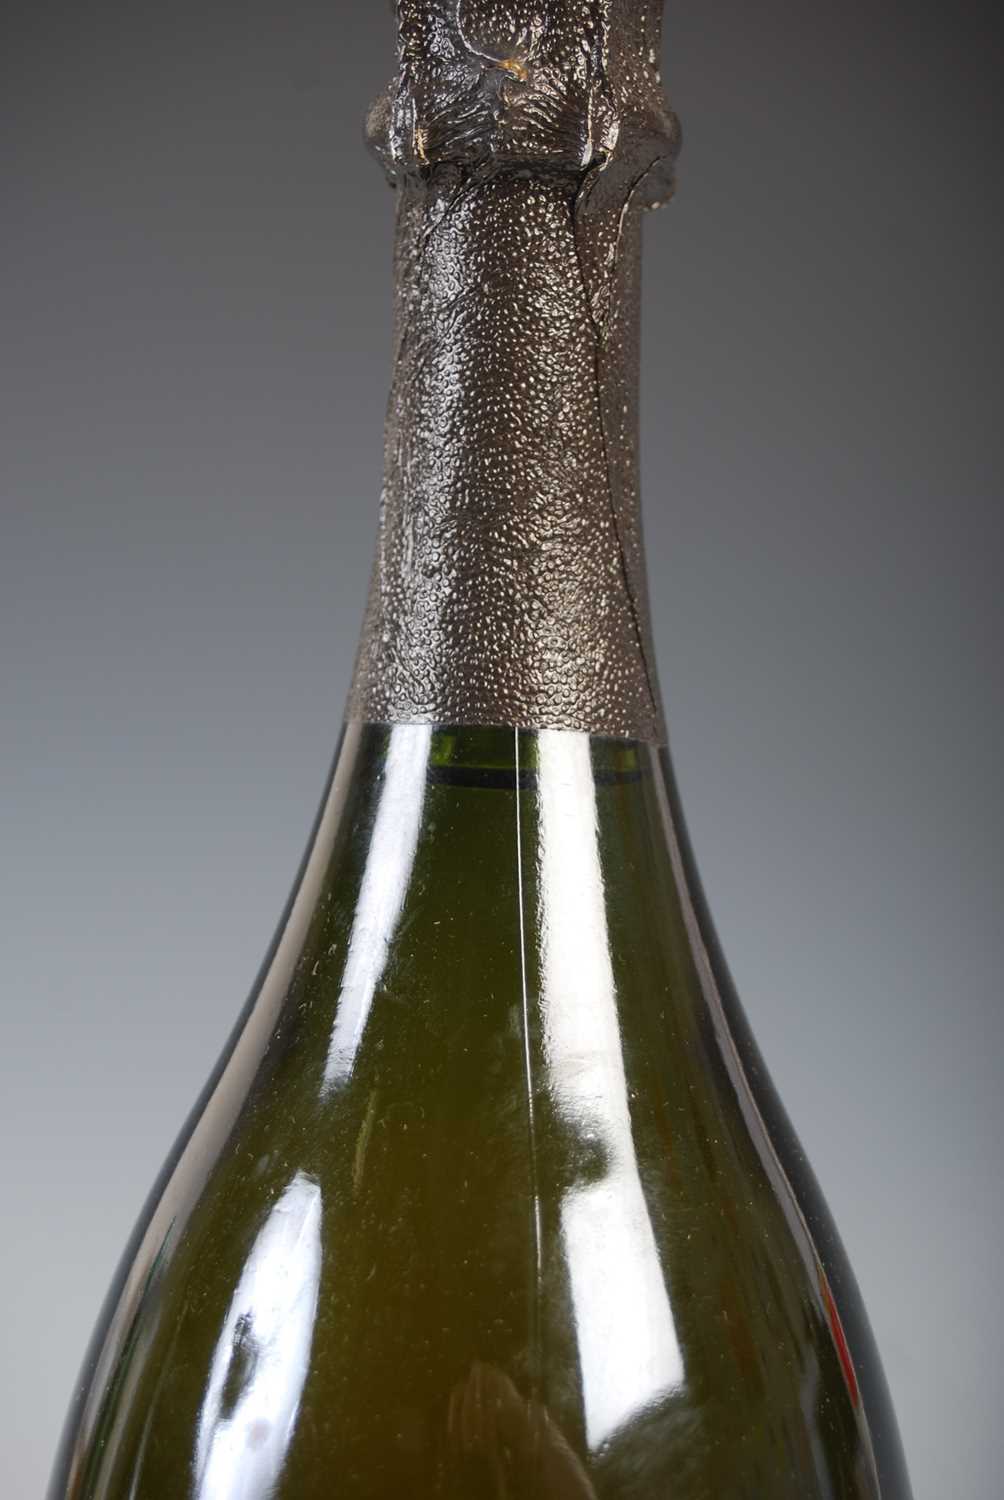 One bottle, Moet Chandon Dom Perignon, vintage 1985, 12.5% vol., 75cl. - Image 3 of 4